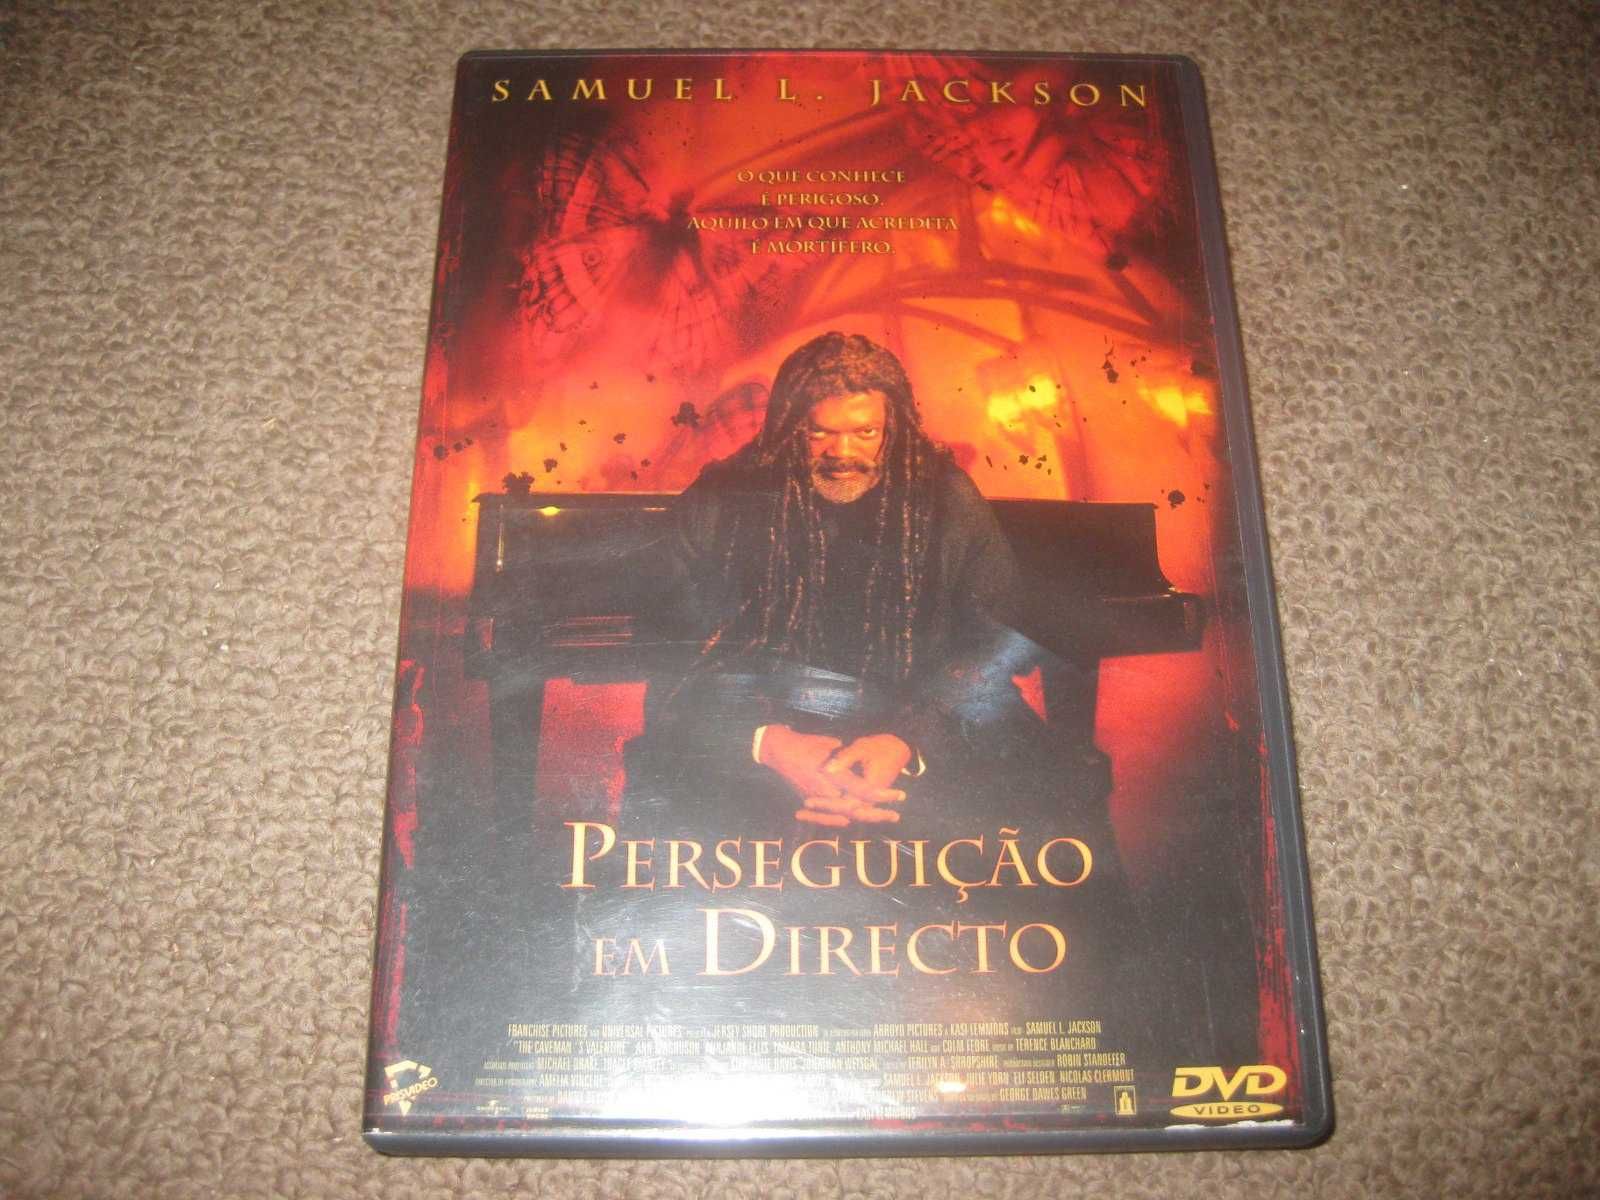 DVD "Perseguição em Directo" com Samuel L. Jackson